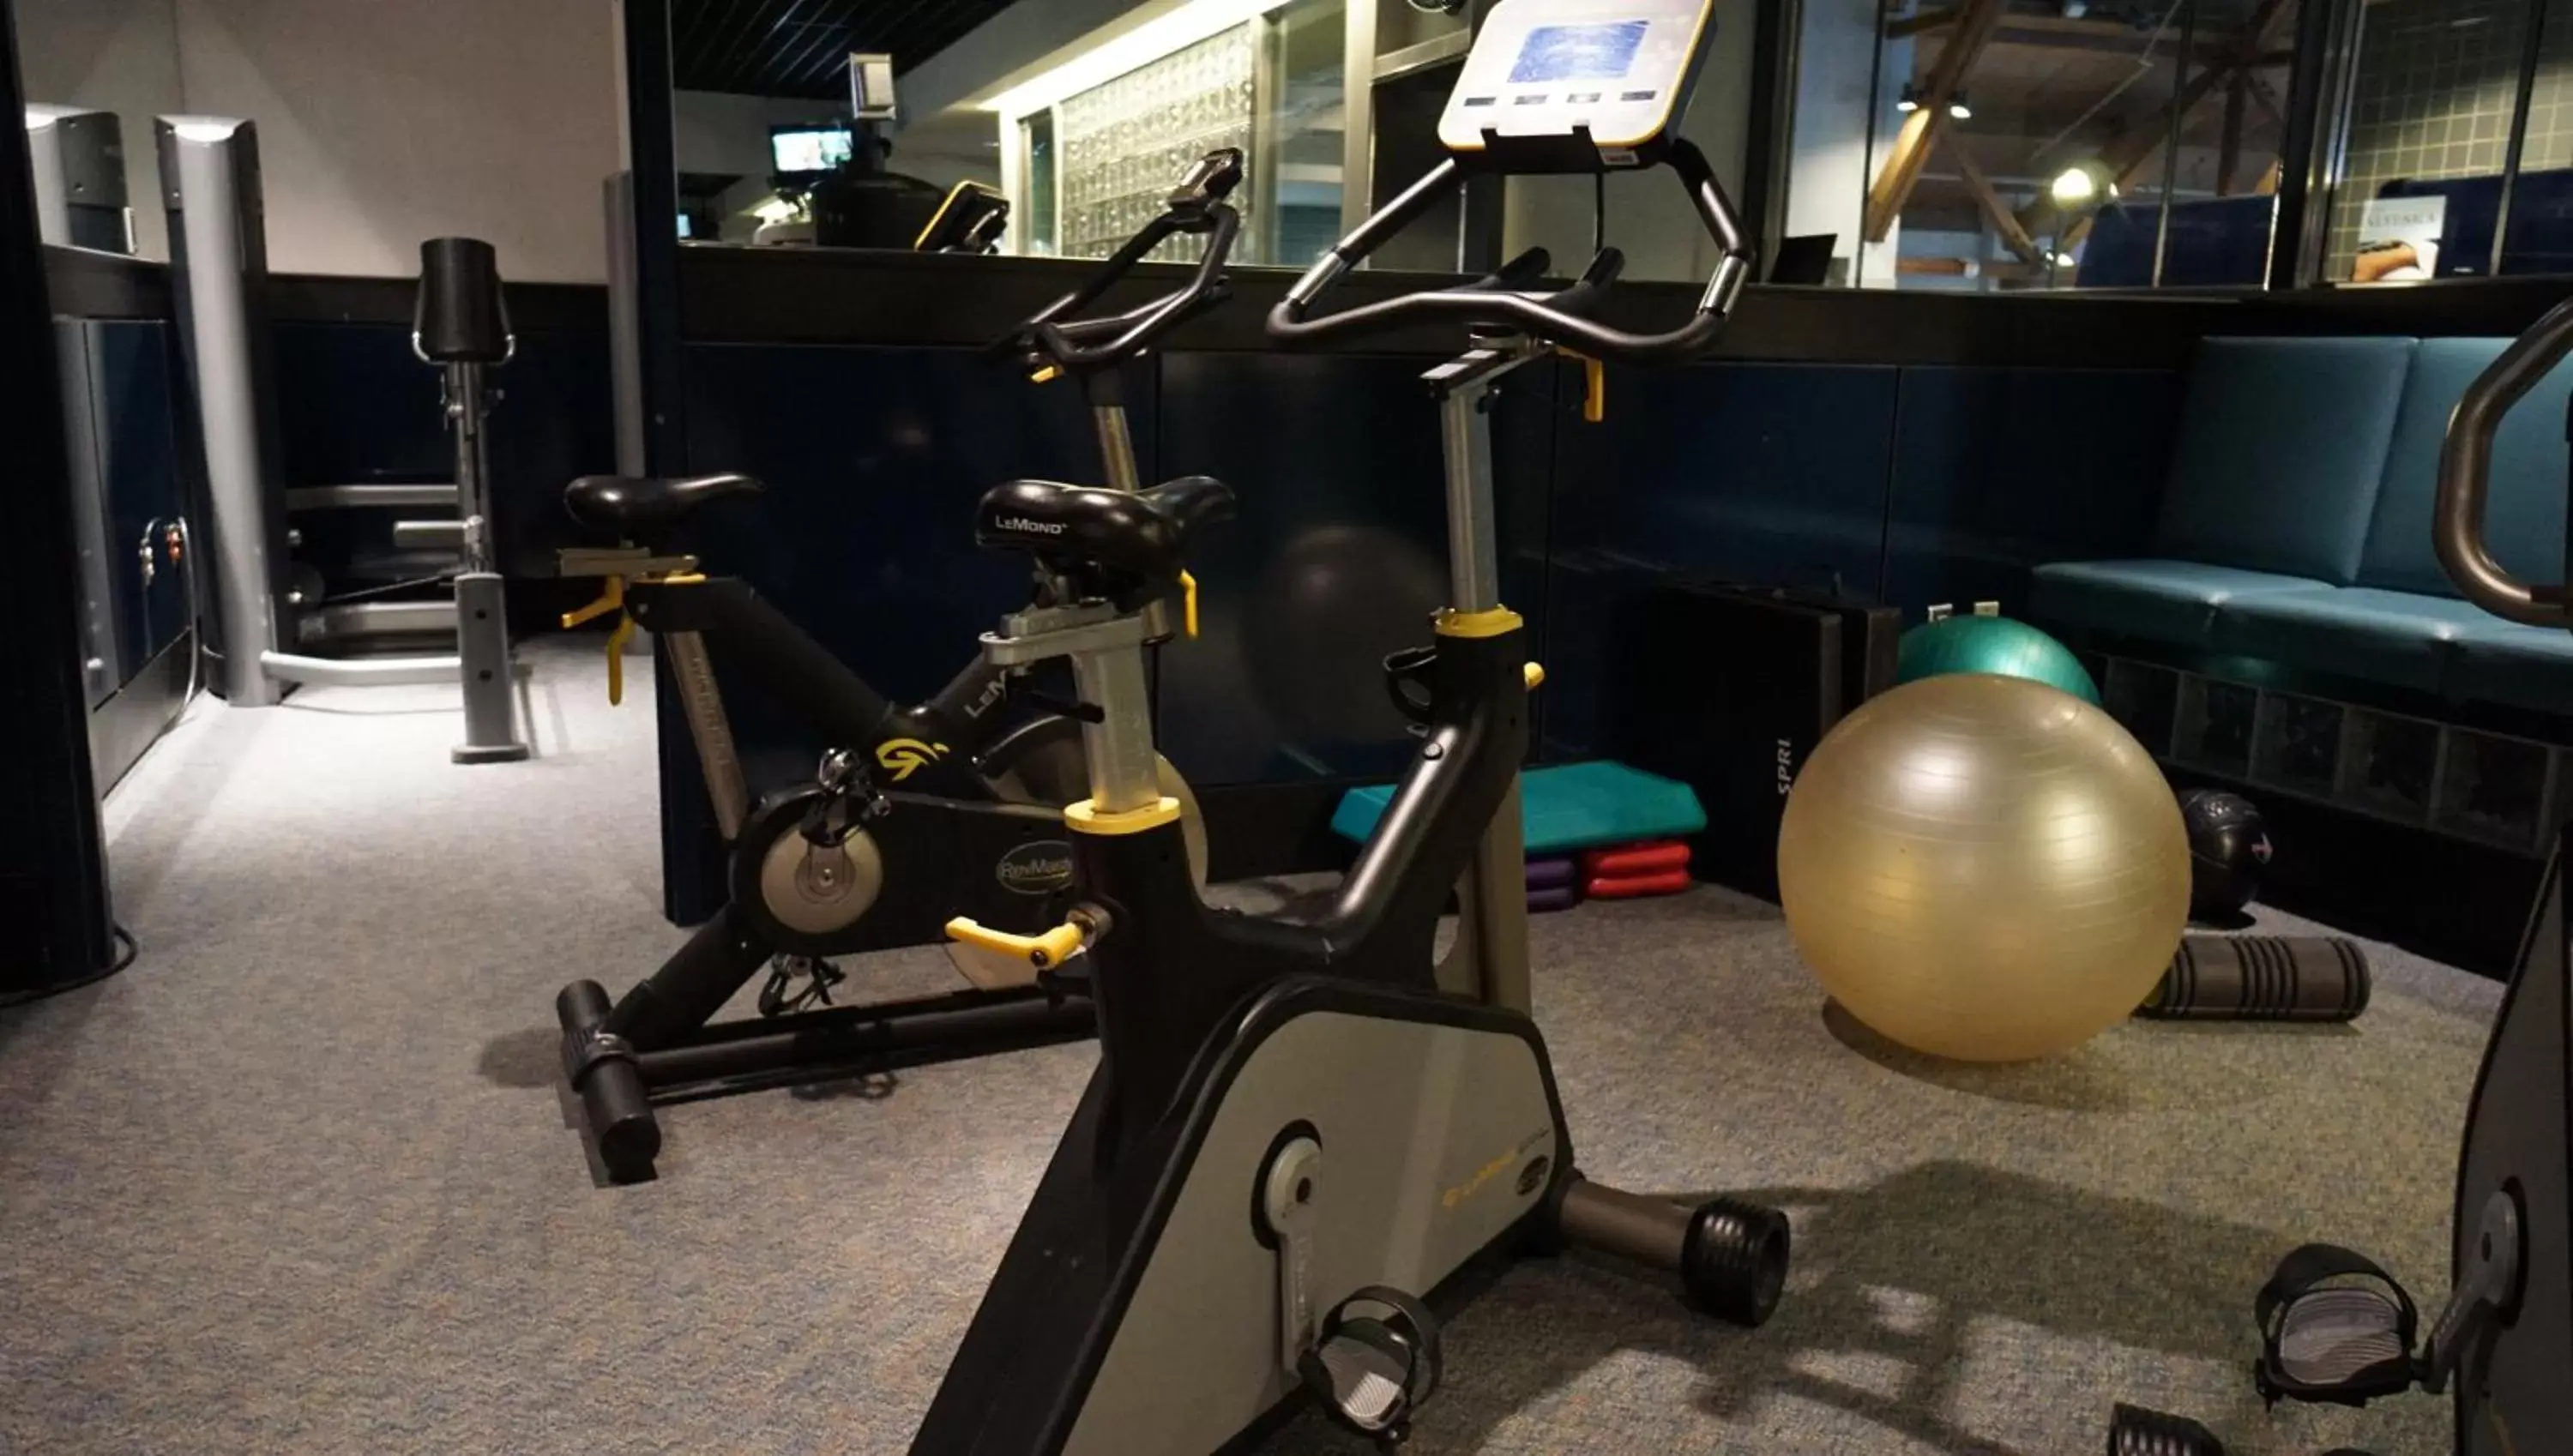 Fitness centre/facilities, Fitness Center/Facilities in Alyeska Resort